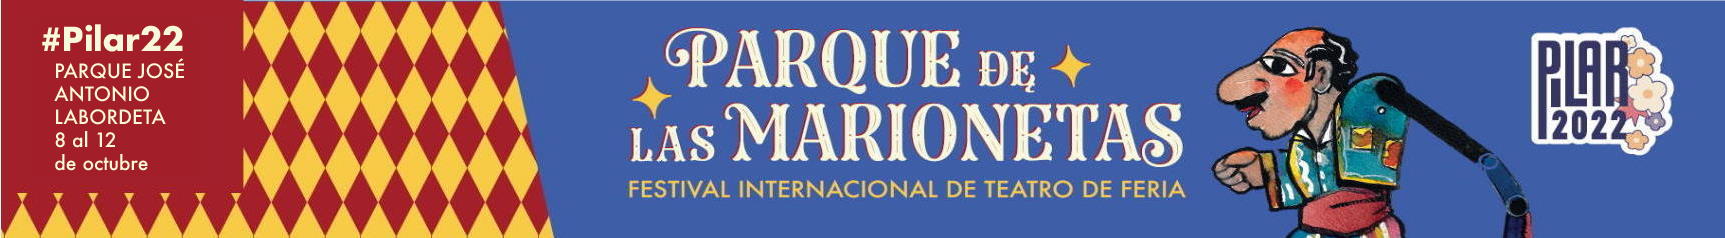 Edición 23 del Parque de las Marionetas del 8 al 12 de Octubre en Zaragoza